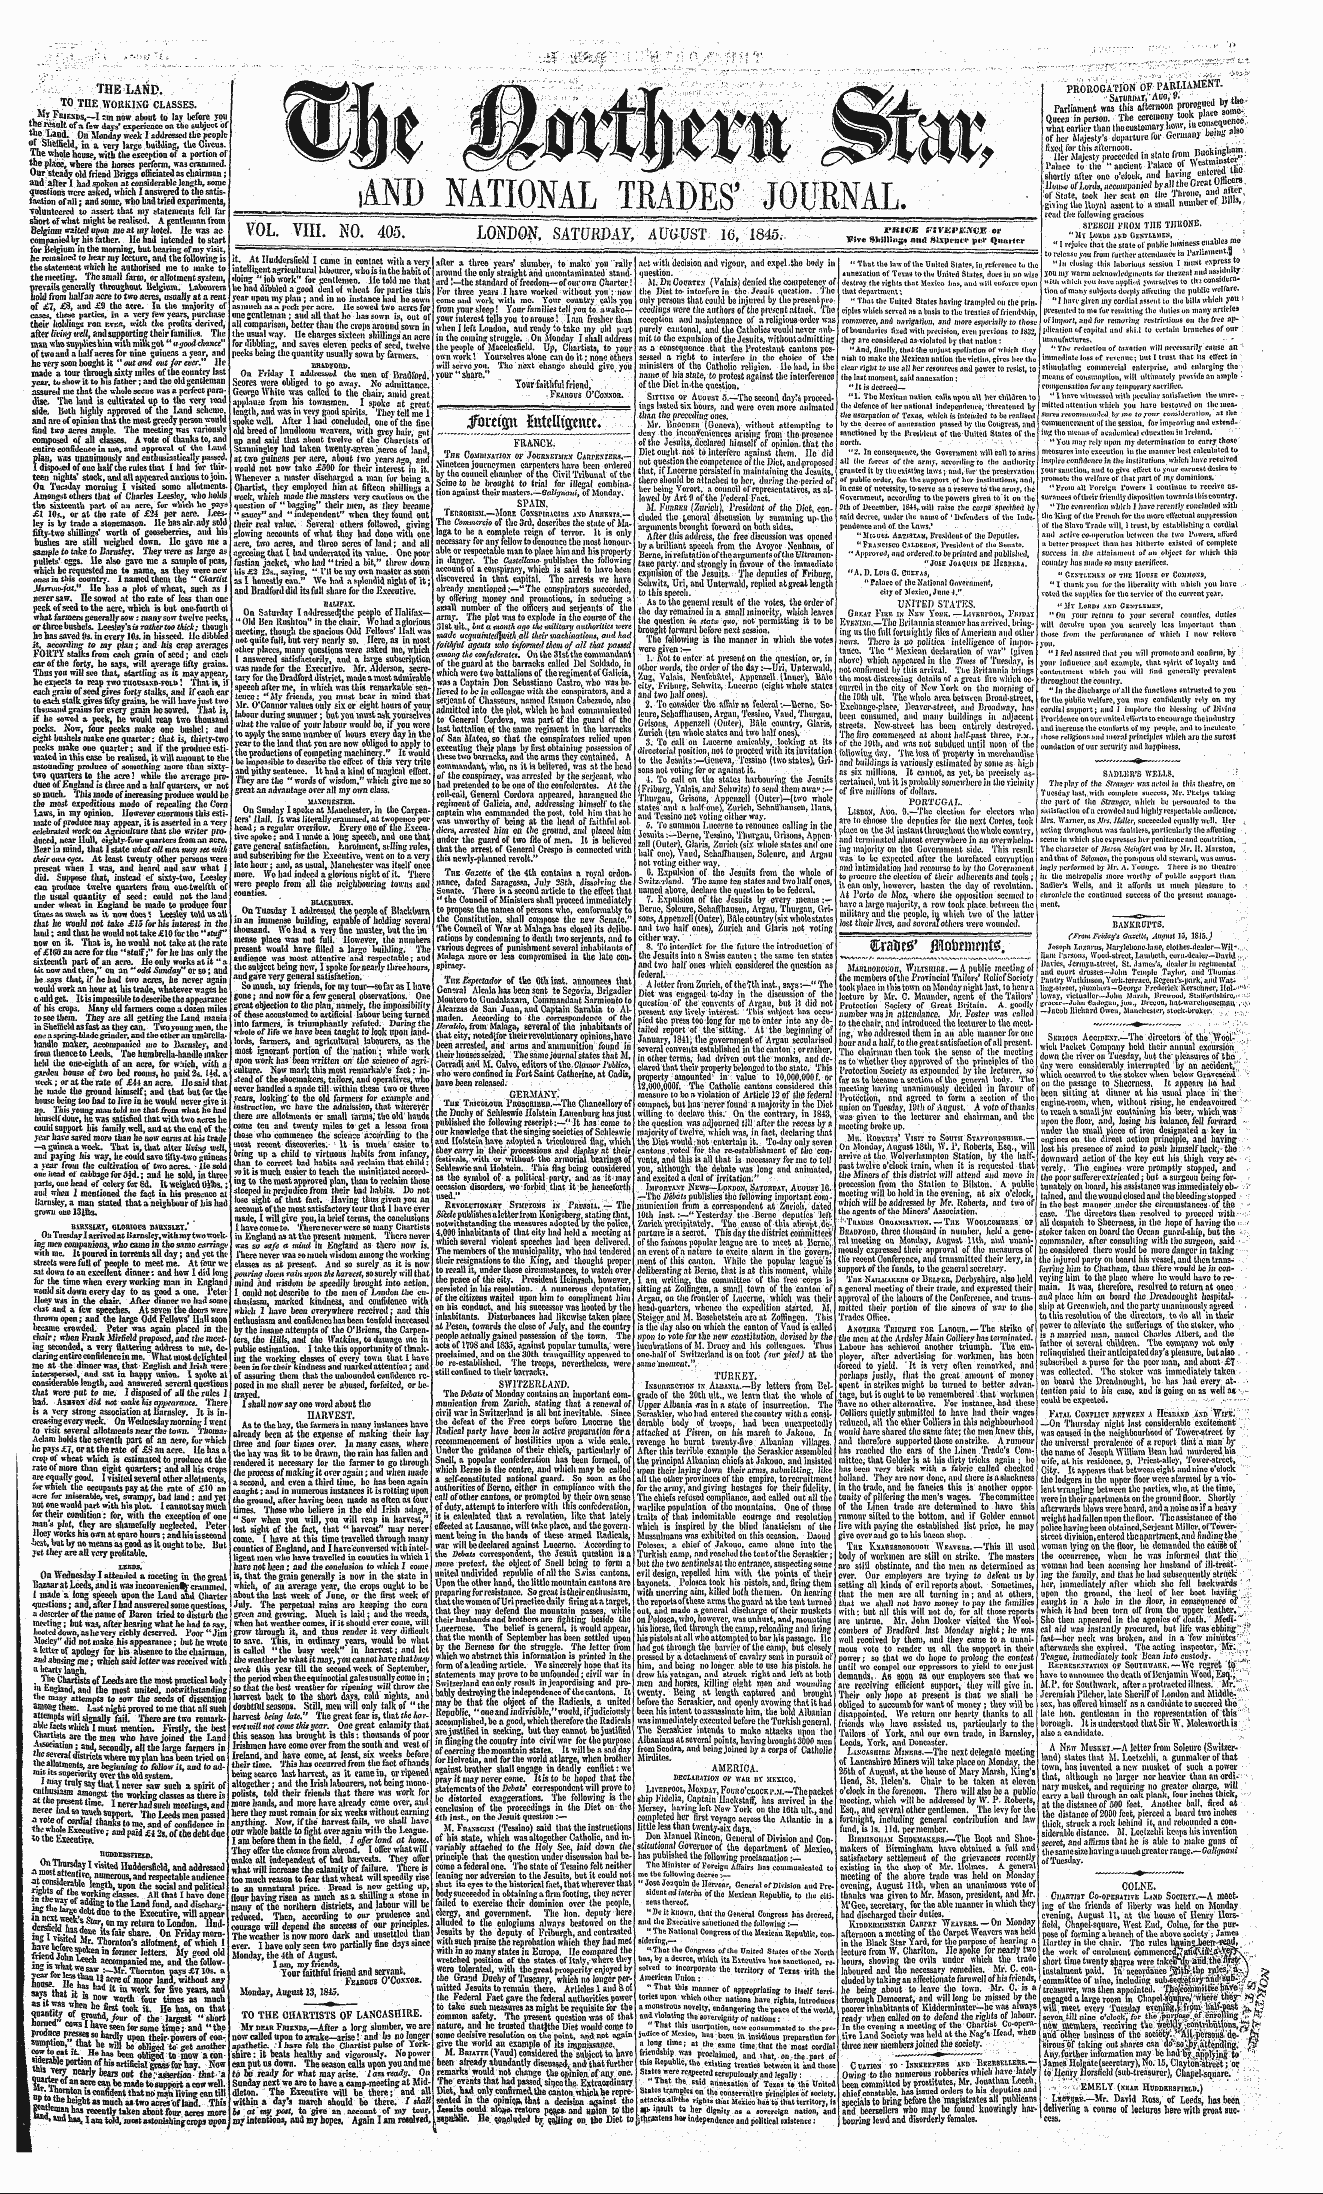 Northern Star (1837-1852): jS F Y, 3rd edition - Ss Hpinsj»En--»Eau, ,. Nceoan^Utahwv , ,...